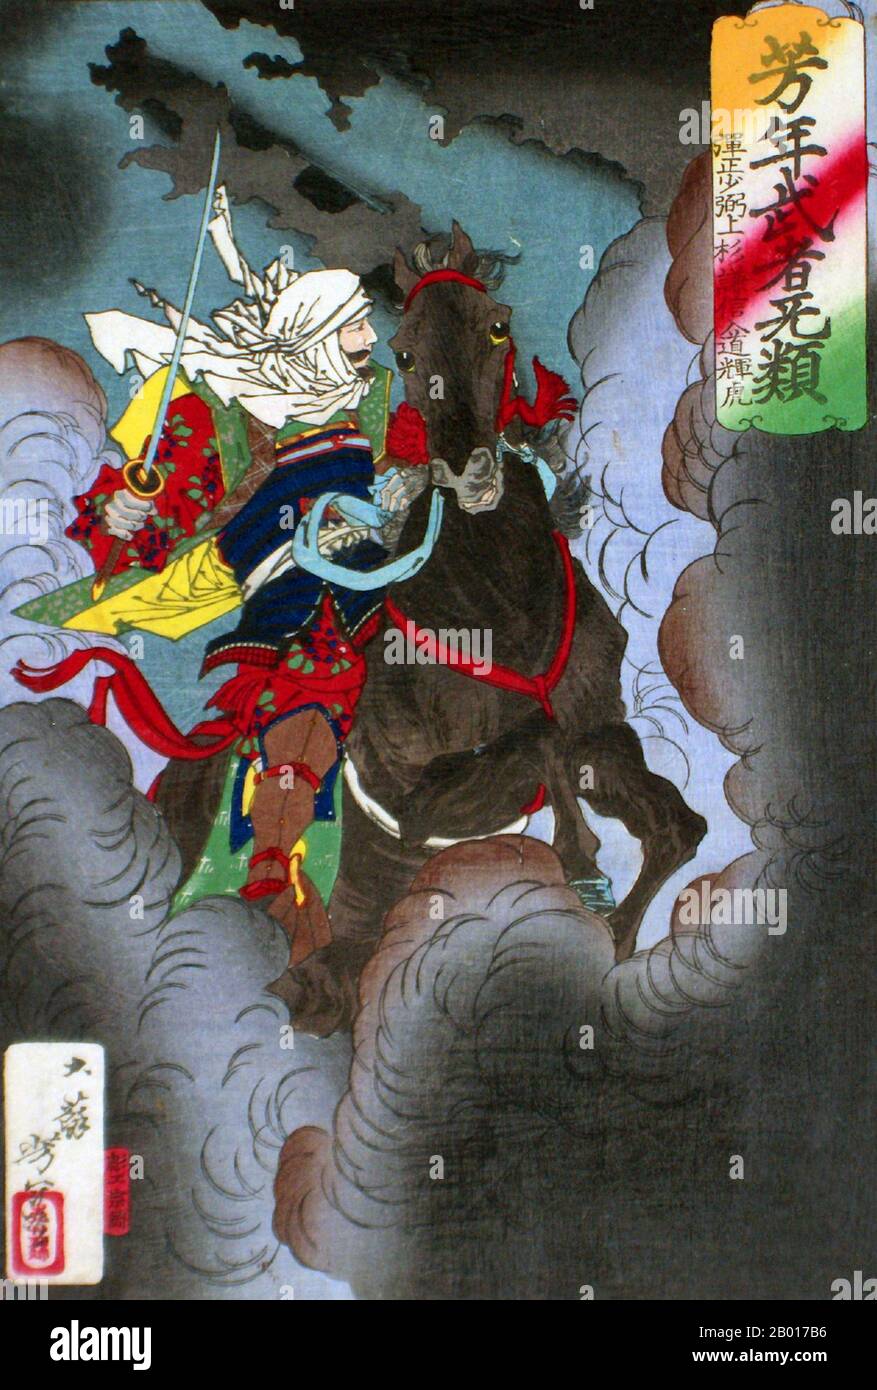 Japon: 'Uesugi Kenshin Nyudo Teutora de l'équitation dans la bataille'.Imprimé Ukiyo-e par Tsukioka Yoshitoshi (1839 - 9 juin 1892), 1883.Tsukioka Yoshitoshi, également appelé Tiso Yoshitoshi, était un artiste japonais.Il est largement reconnu comme le dernier grand maître d'Ukiyo-e, un type d'impression de blocs de bois japonais.Il est également considéré comme l'un des plus grands innovateurs de la forme.Sa carrière s'est étendue à deux époques : les dernières années du Japon féodal et les premières années du Japon moderne après la restauration de Meiji. Banque D'Images